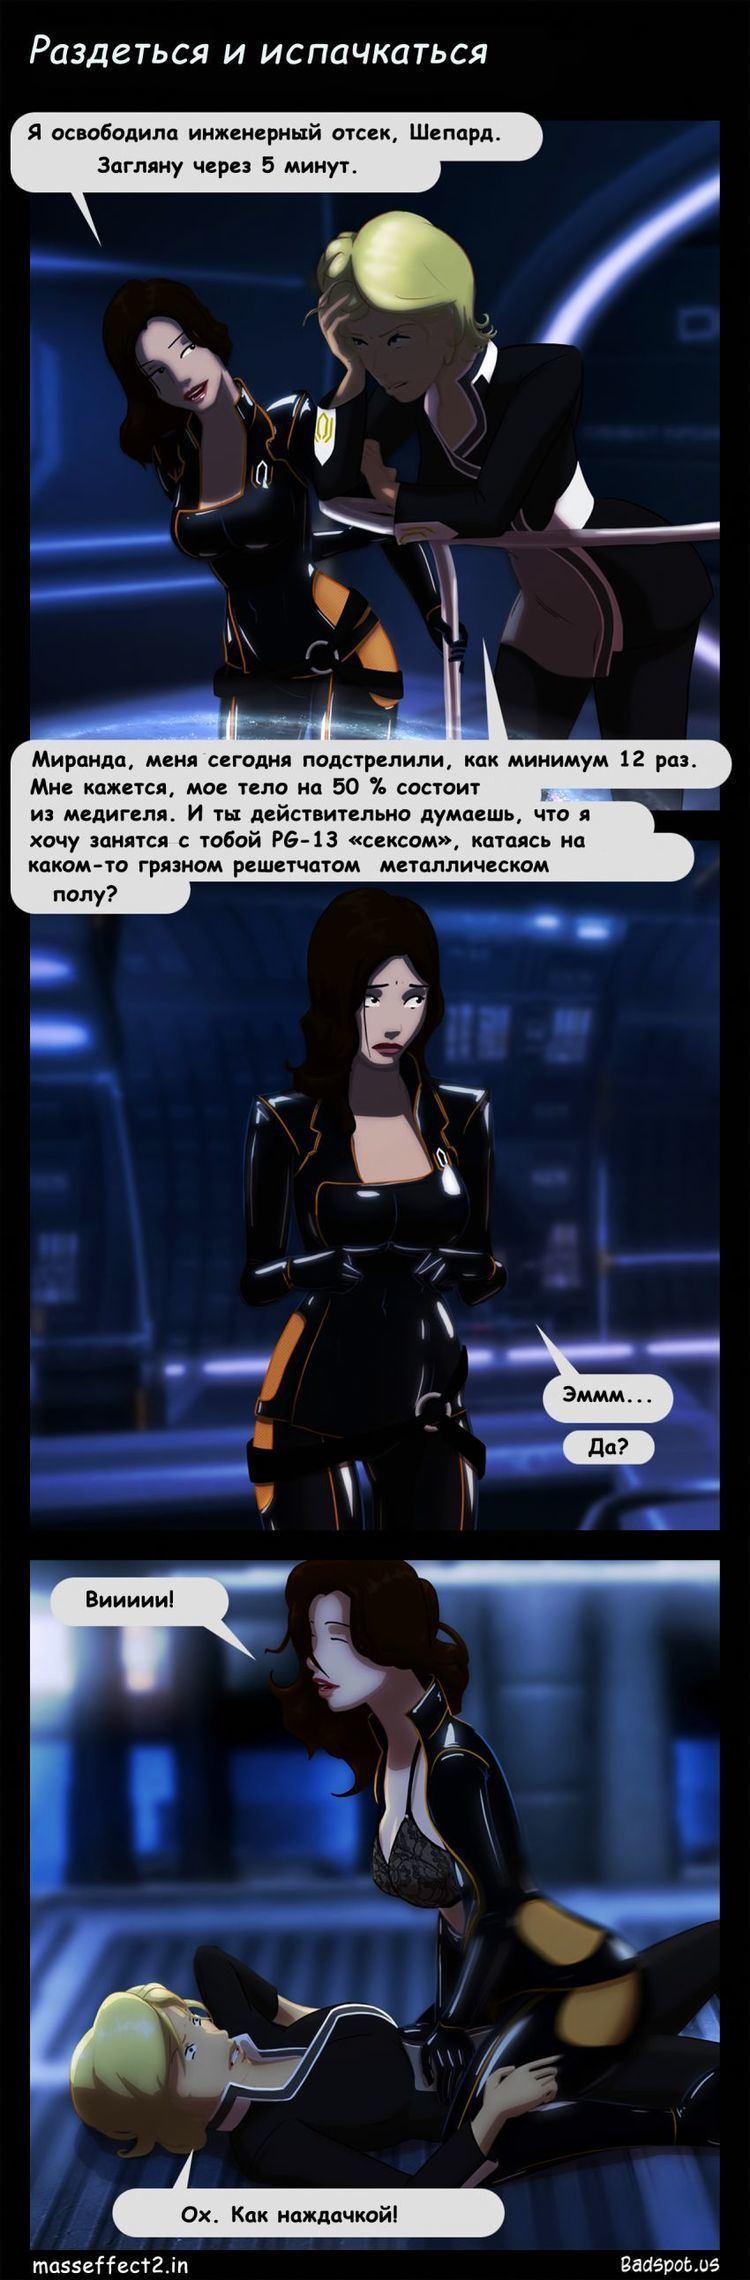 Mass Effect (comics) Mass Effect Comic Worn Down and Dirty